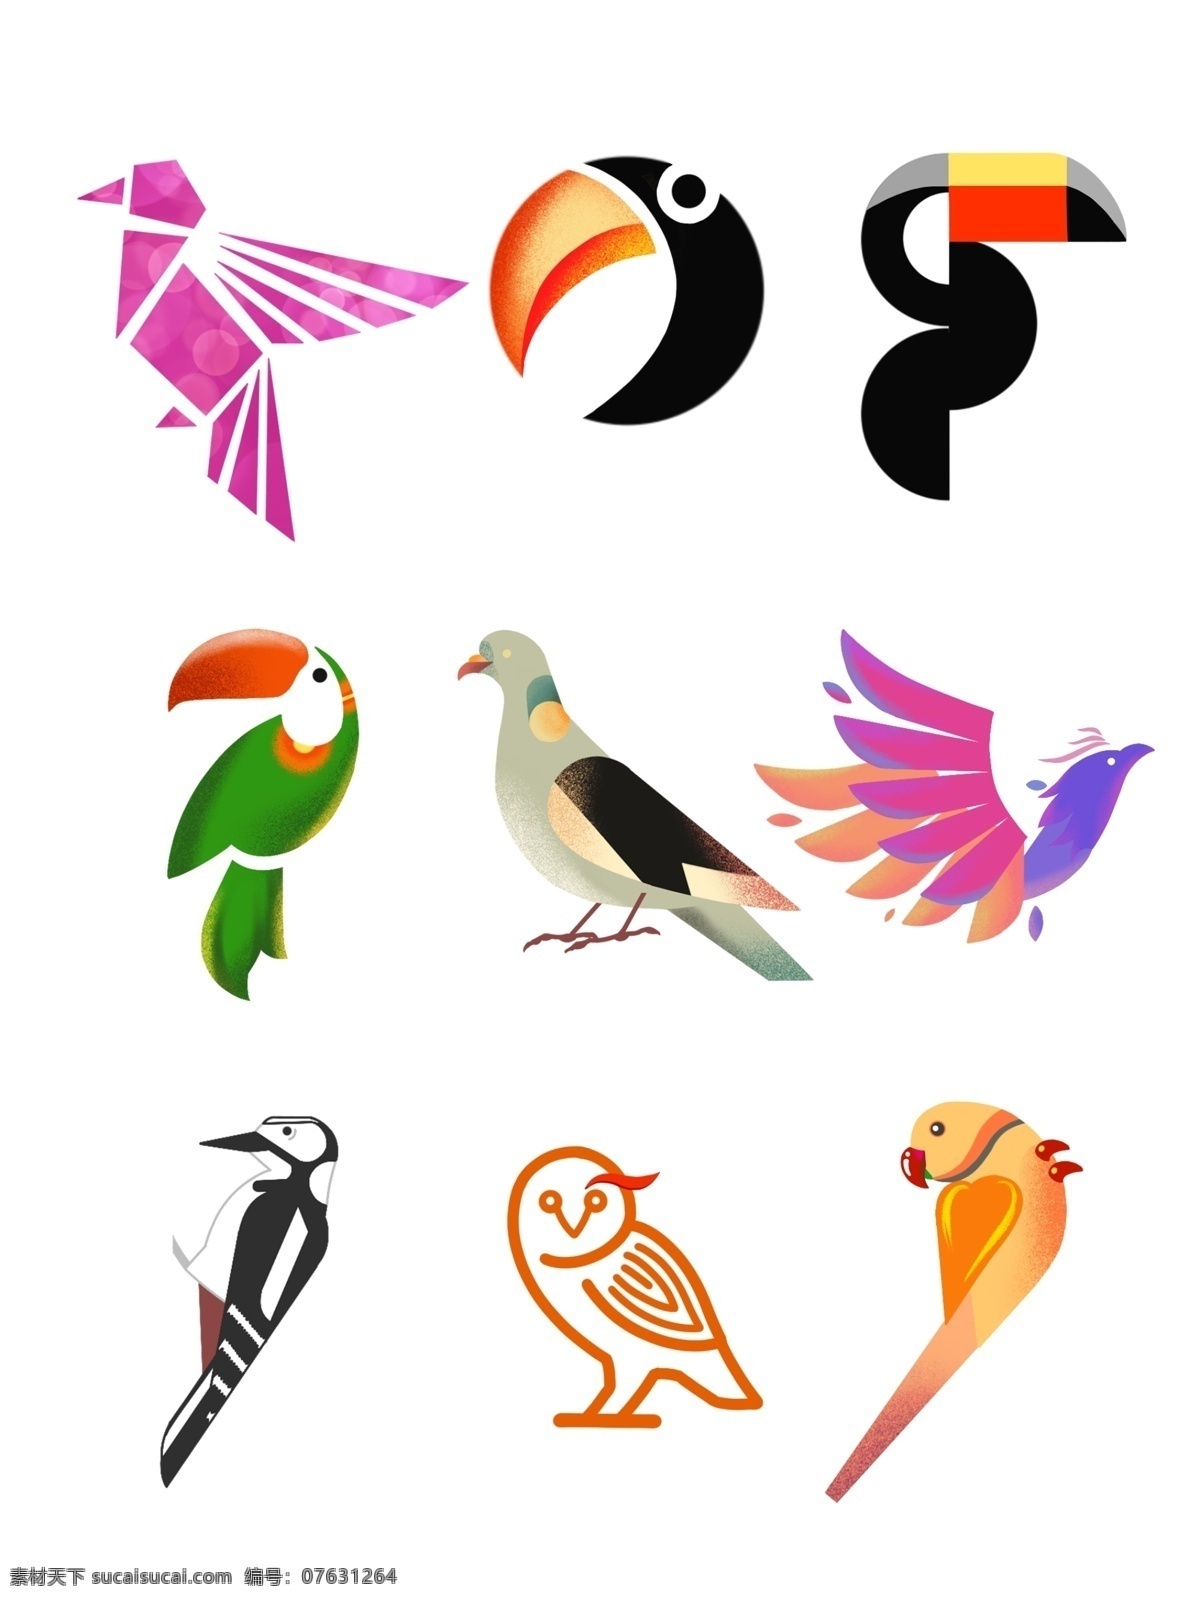 国际 爱鸟 日 各种 鸟类 图标 元素 集合 国际爱鸟日 鸟类图标 鸟类素材 鸟 logo 鸟类设计 鹦鹉 猫头鹰 啄木鸟 几何 流线 渐变 手绘鸟